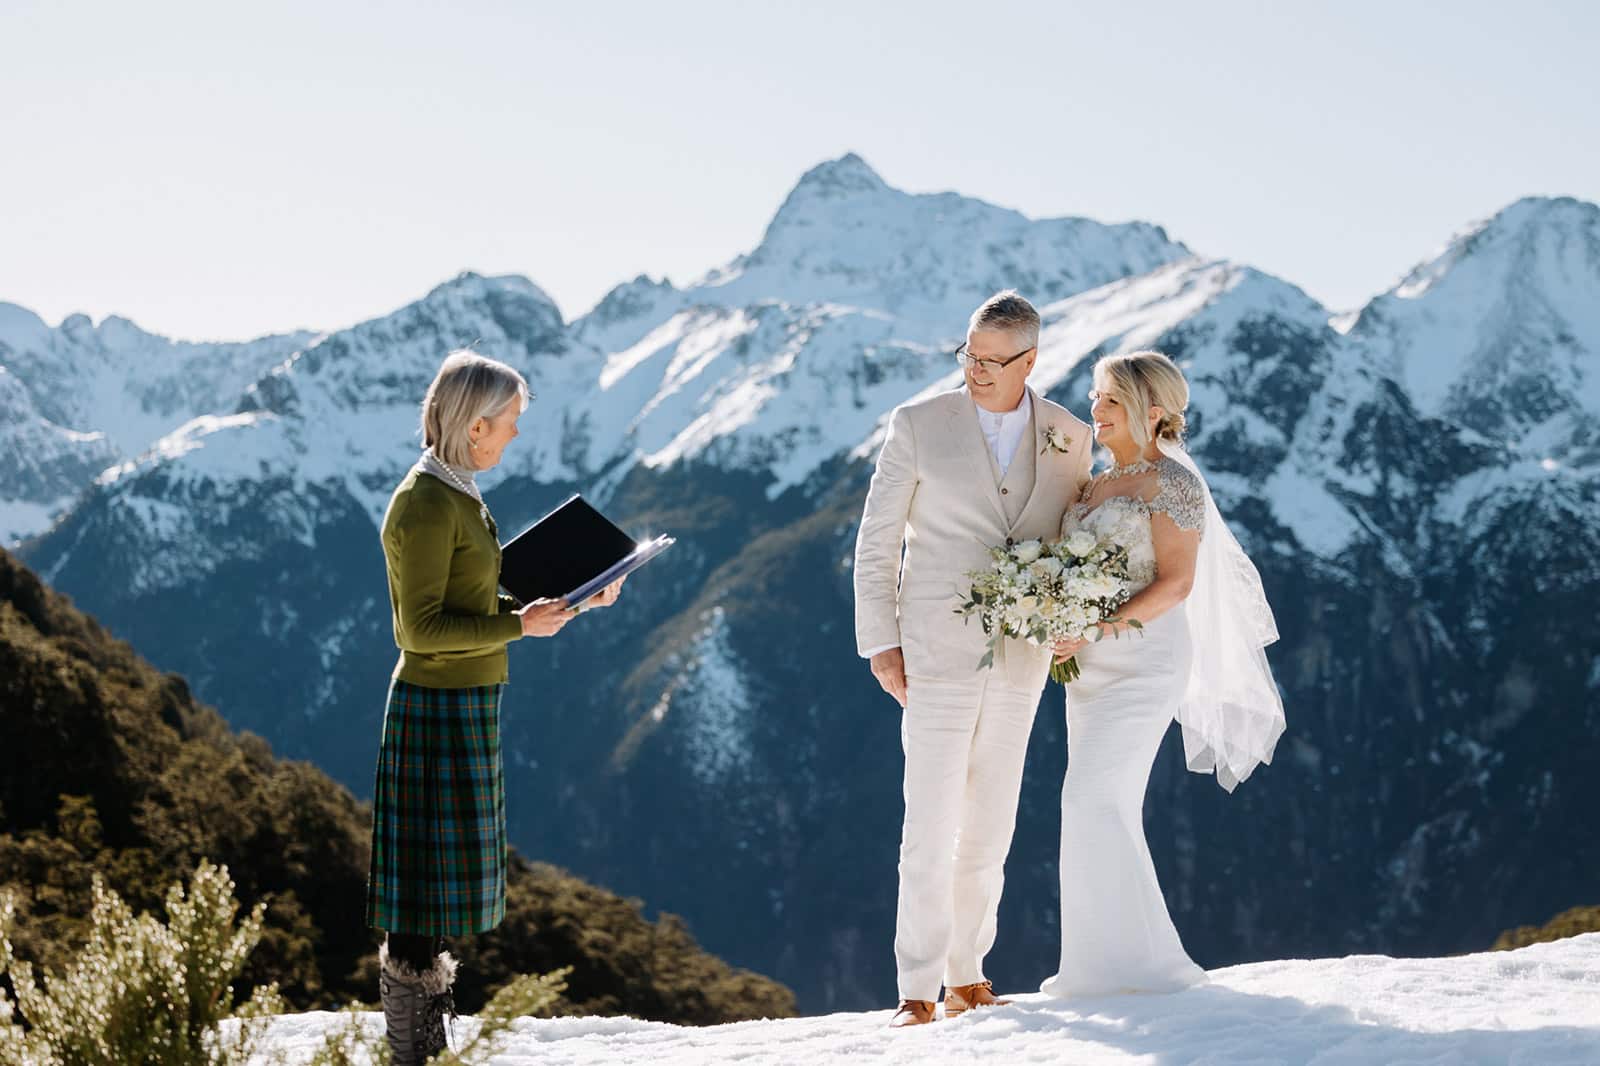 Luxury elopement wedding in Queenstown New Zealand. The Majestic Heli Wedding